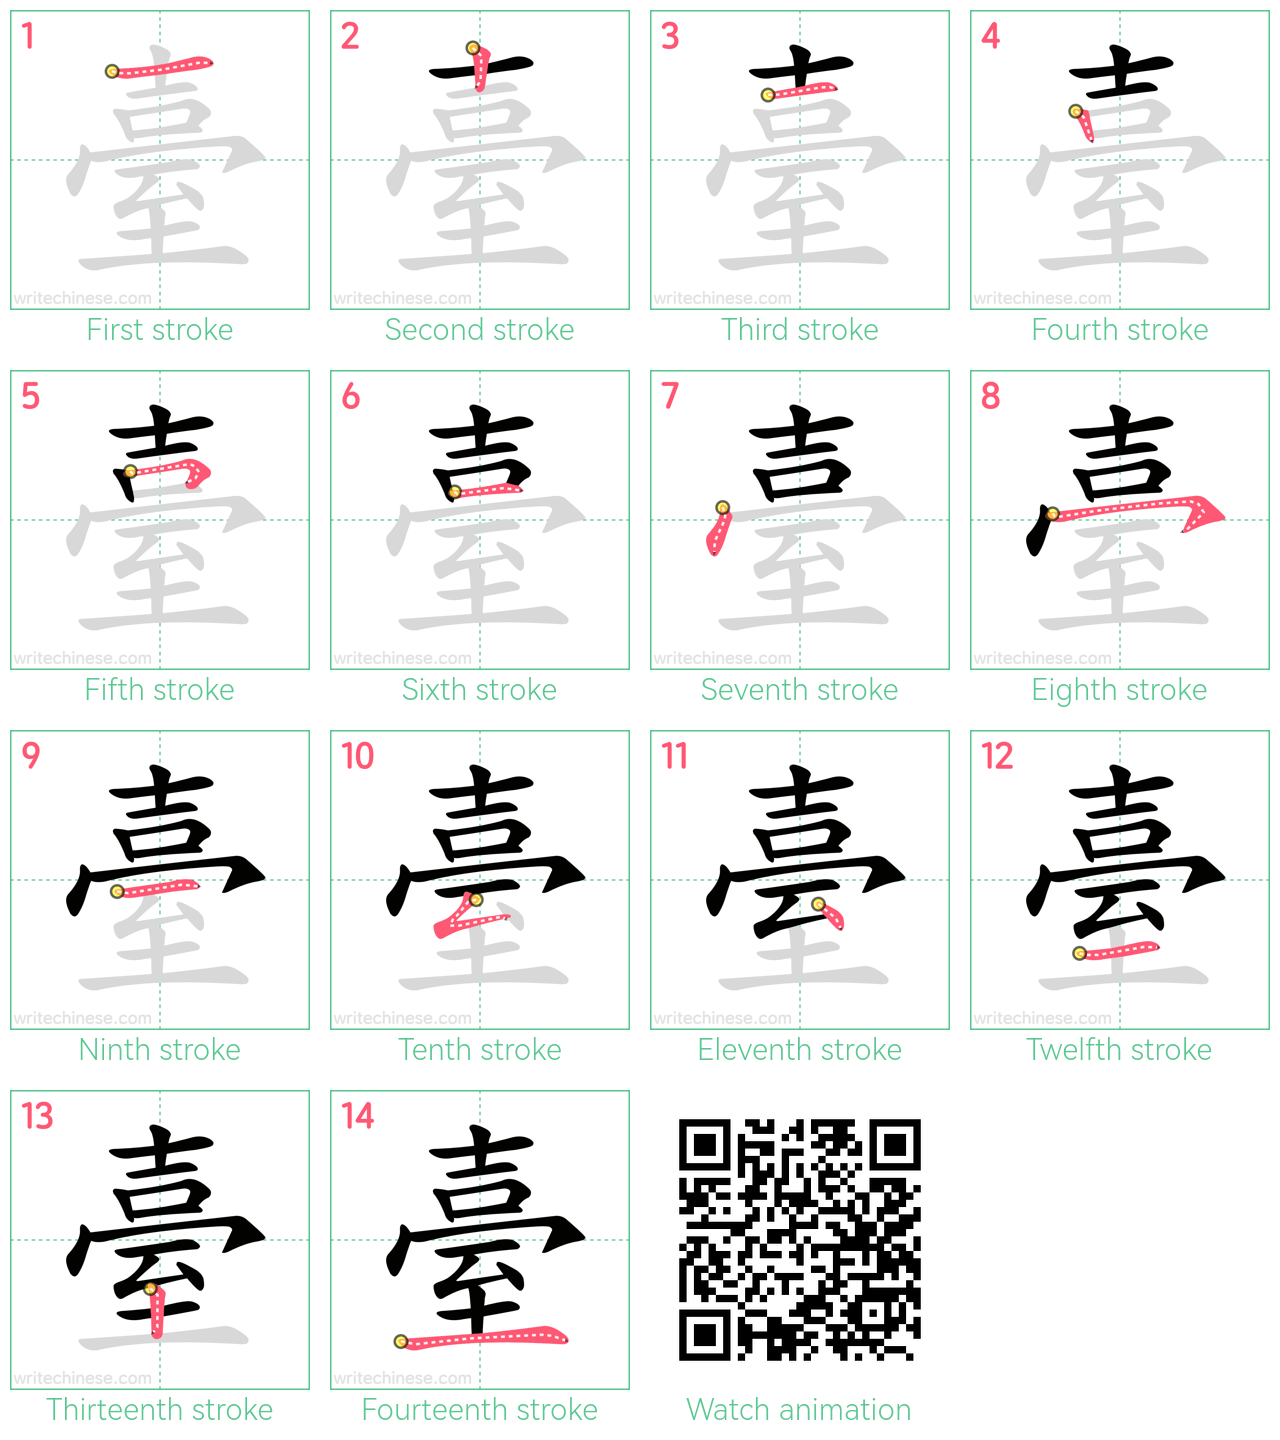 臺 step-by-step stroke order diagrams